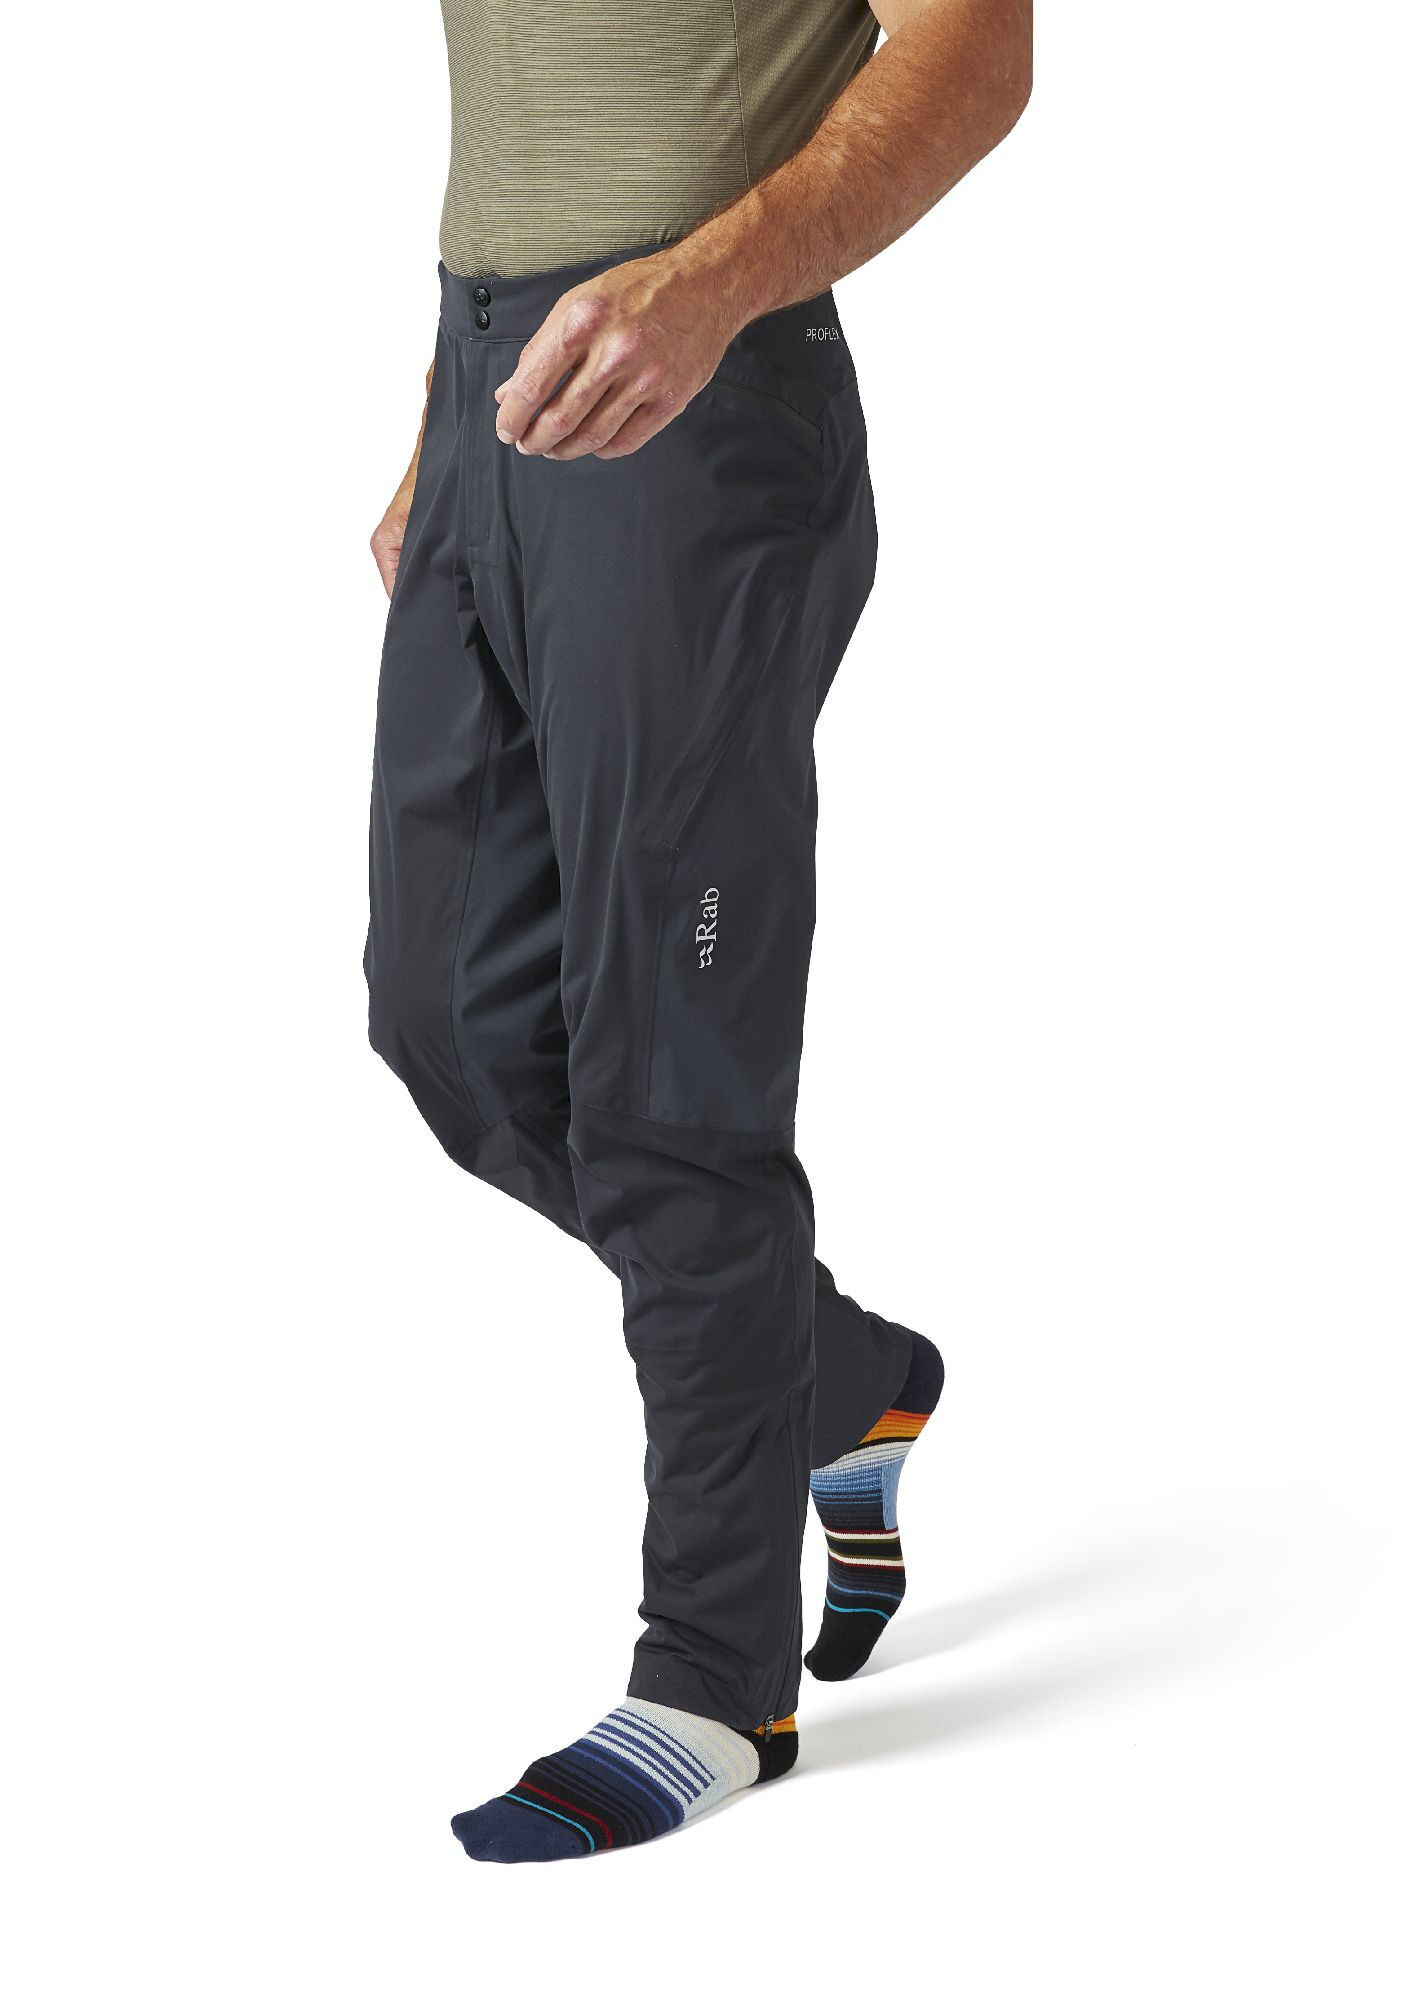 Rab Cinder Kinetic Pants - Cycling trousers - Men's | Hardloop